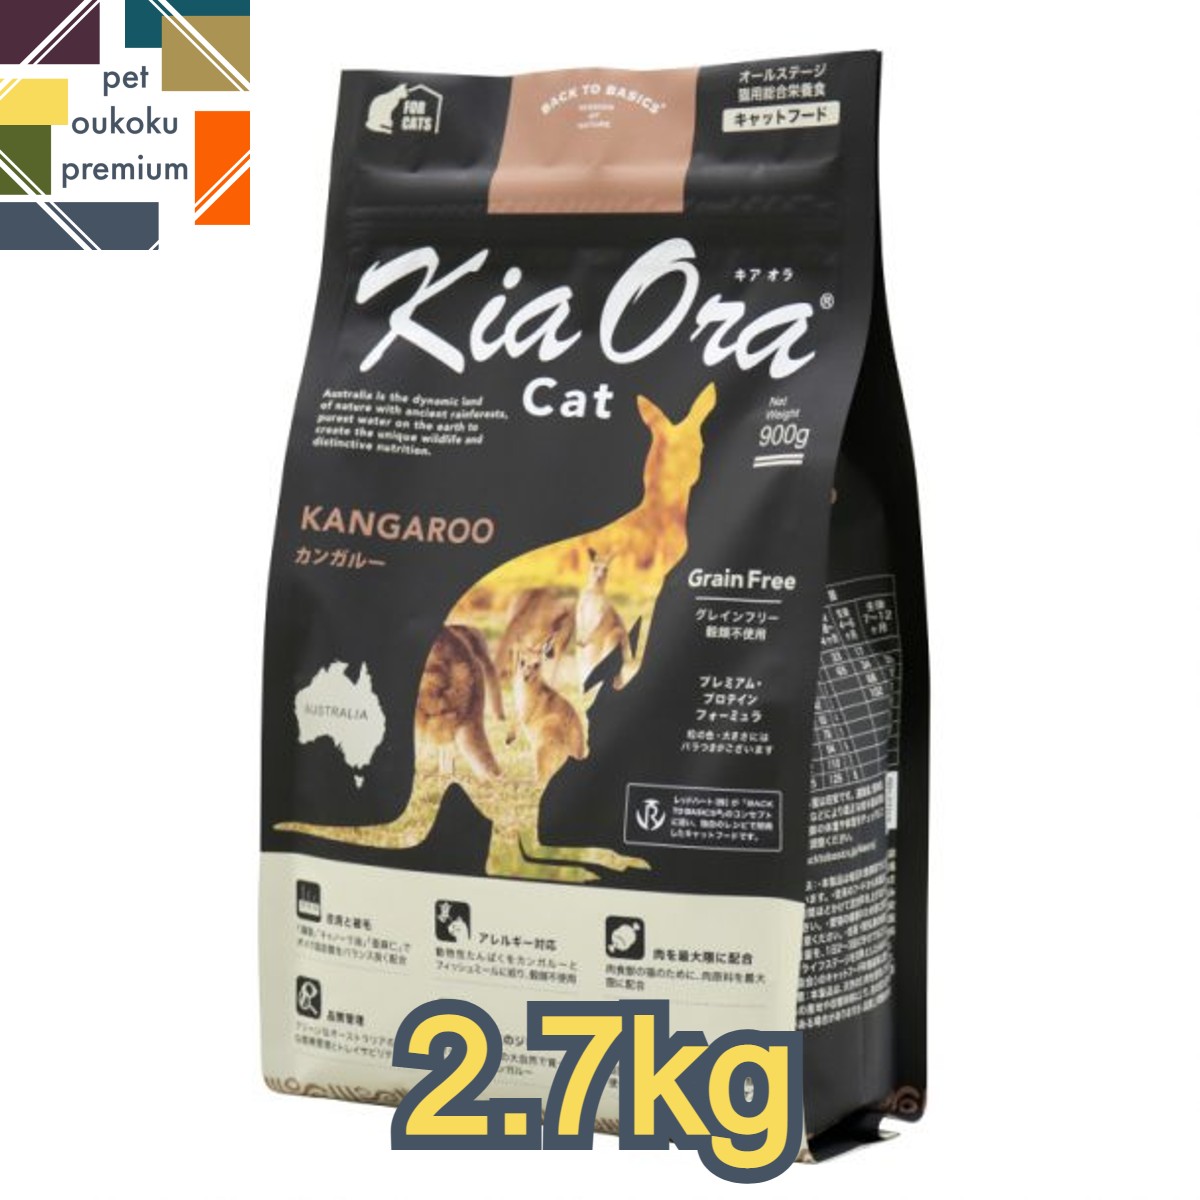 楽天pet oukoku premium【あす楽対応】キアオラ 猫 カンガルー 2.7kg KiaOra 総合栄養食 キャットフード 全年齢 アダルト 成猫 シニア 高齢猫 4963974020756 送料無料